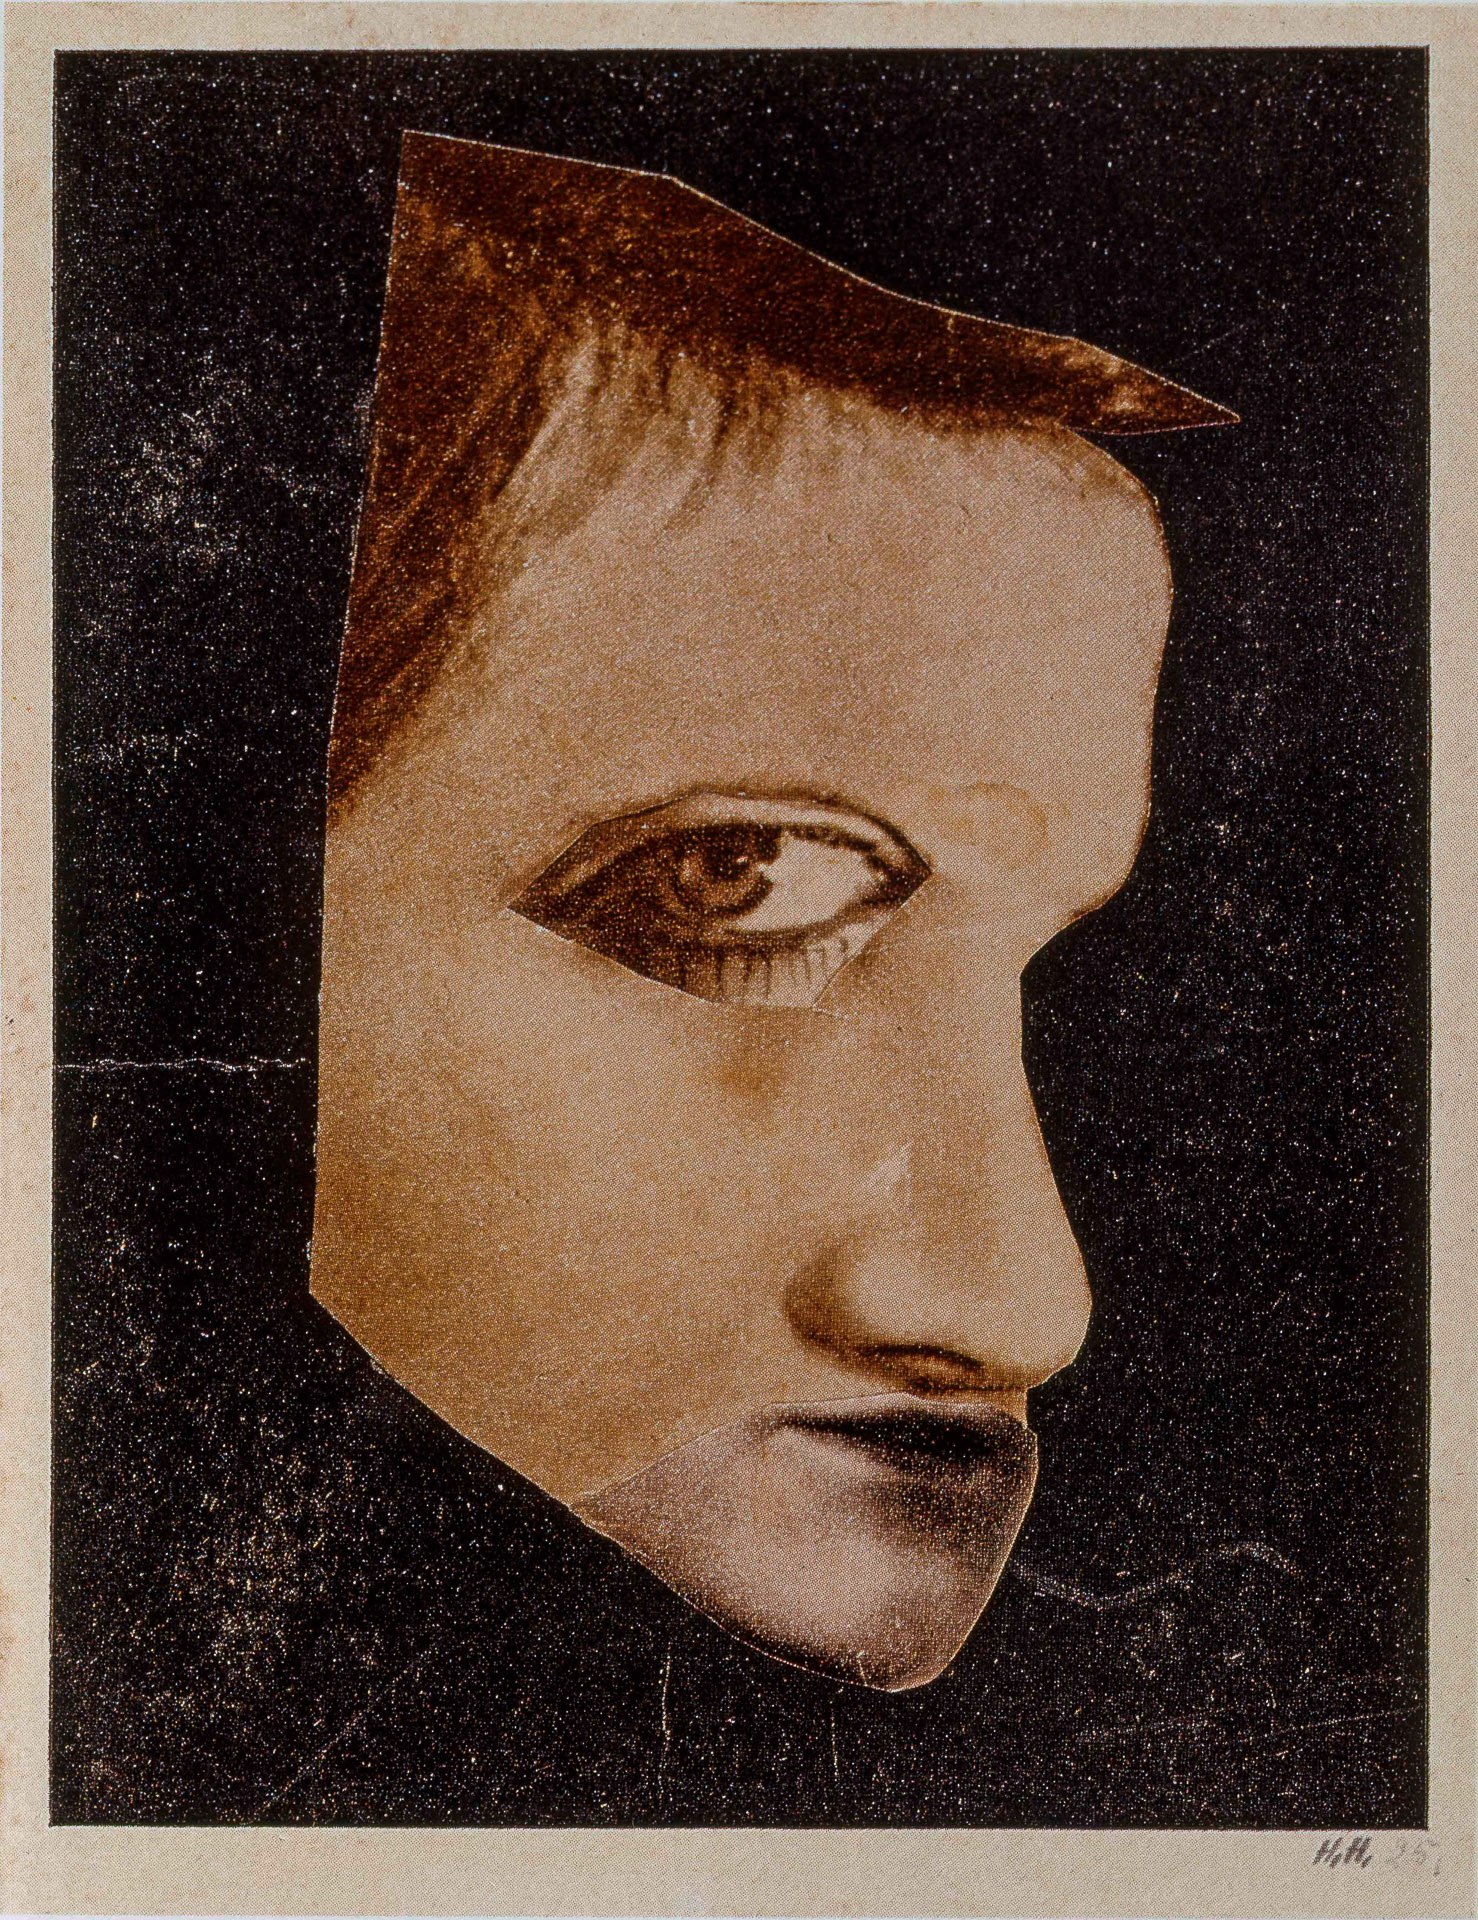 Hannah Höch, Der Melancholiker (The Melancholic), 1925, © VG Bild-Kunst, Bonn 2022 